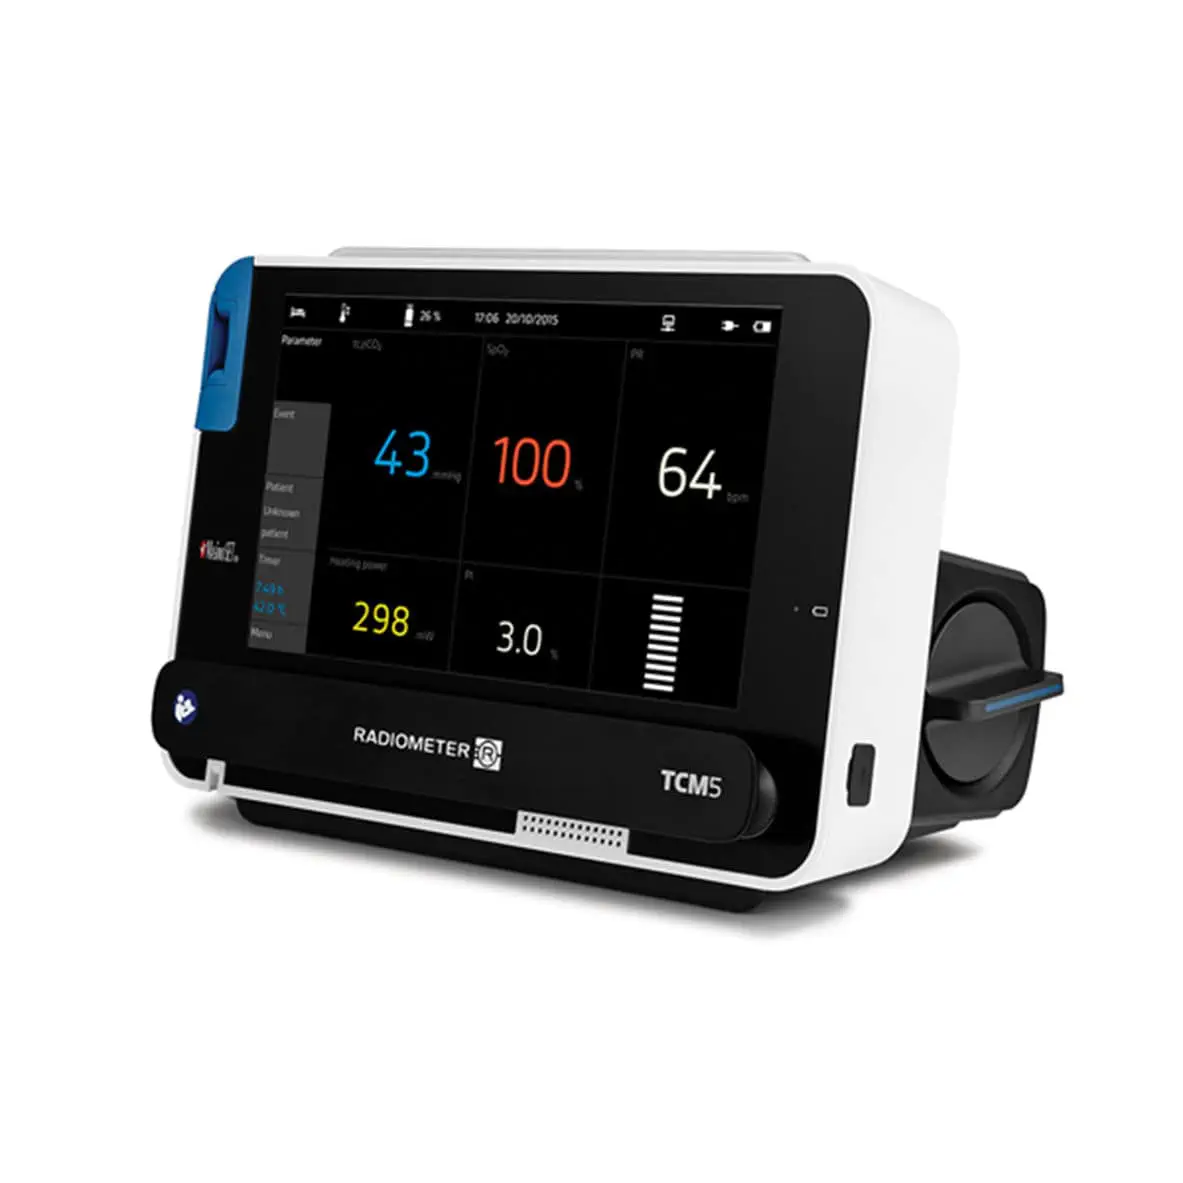 เครื่องติดตามการทำงานของหัวใจและสัญญาณชีพอัตโนมัติ  Transcutaneous patient monitor TCM5 BASIC  Radiometer Medical